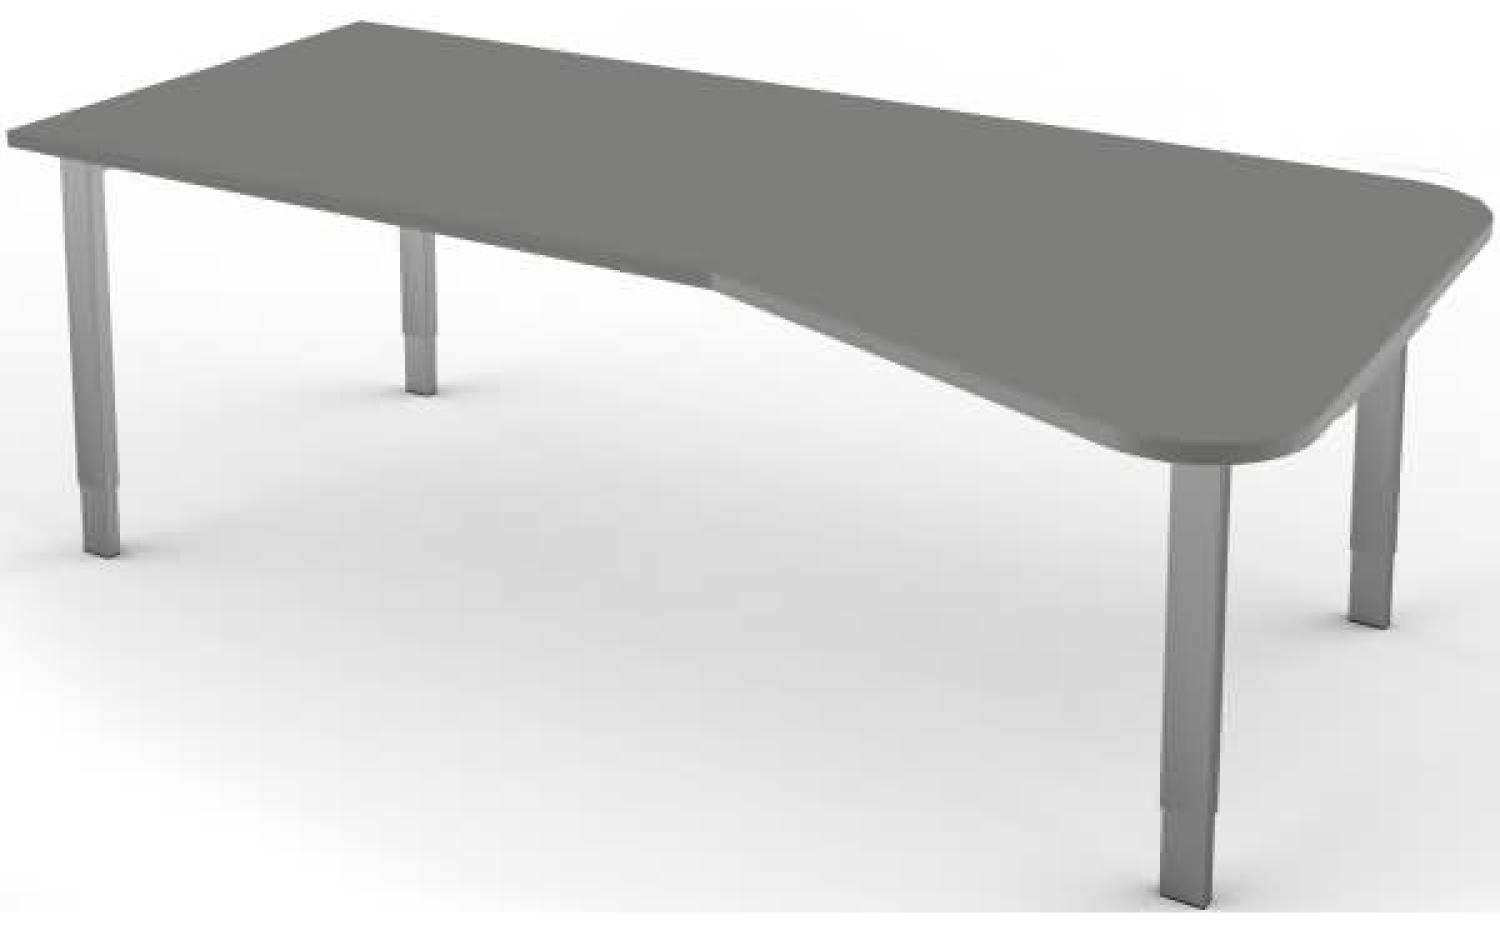 Freiformtisch mit 4-Bein-Gestell, 195x80 / 100cm, Graphit / Silber Bild 1